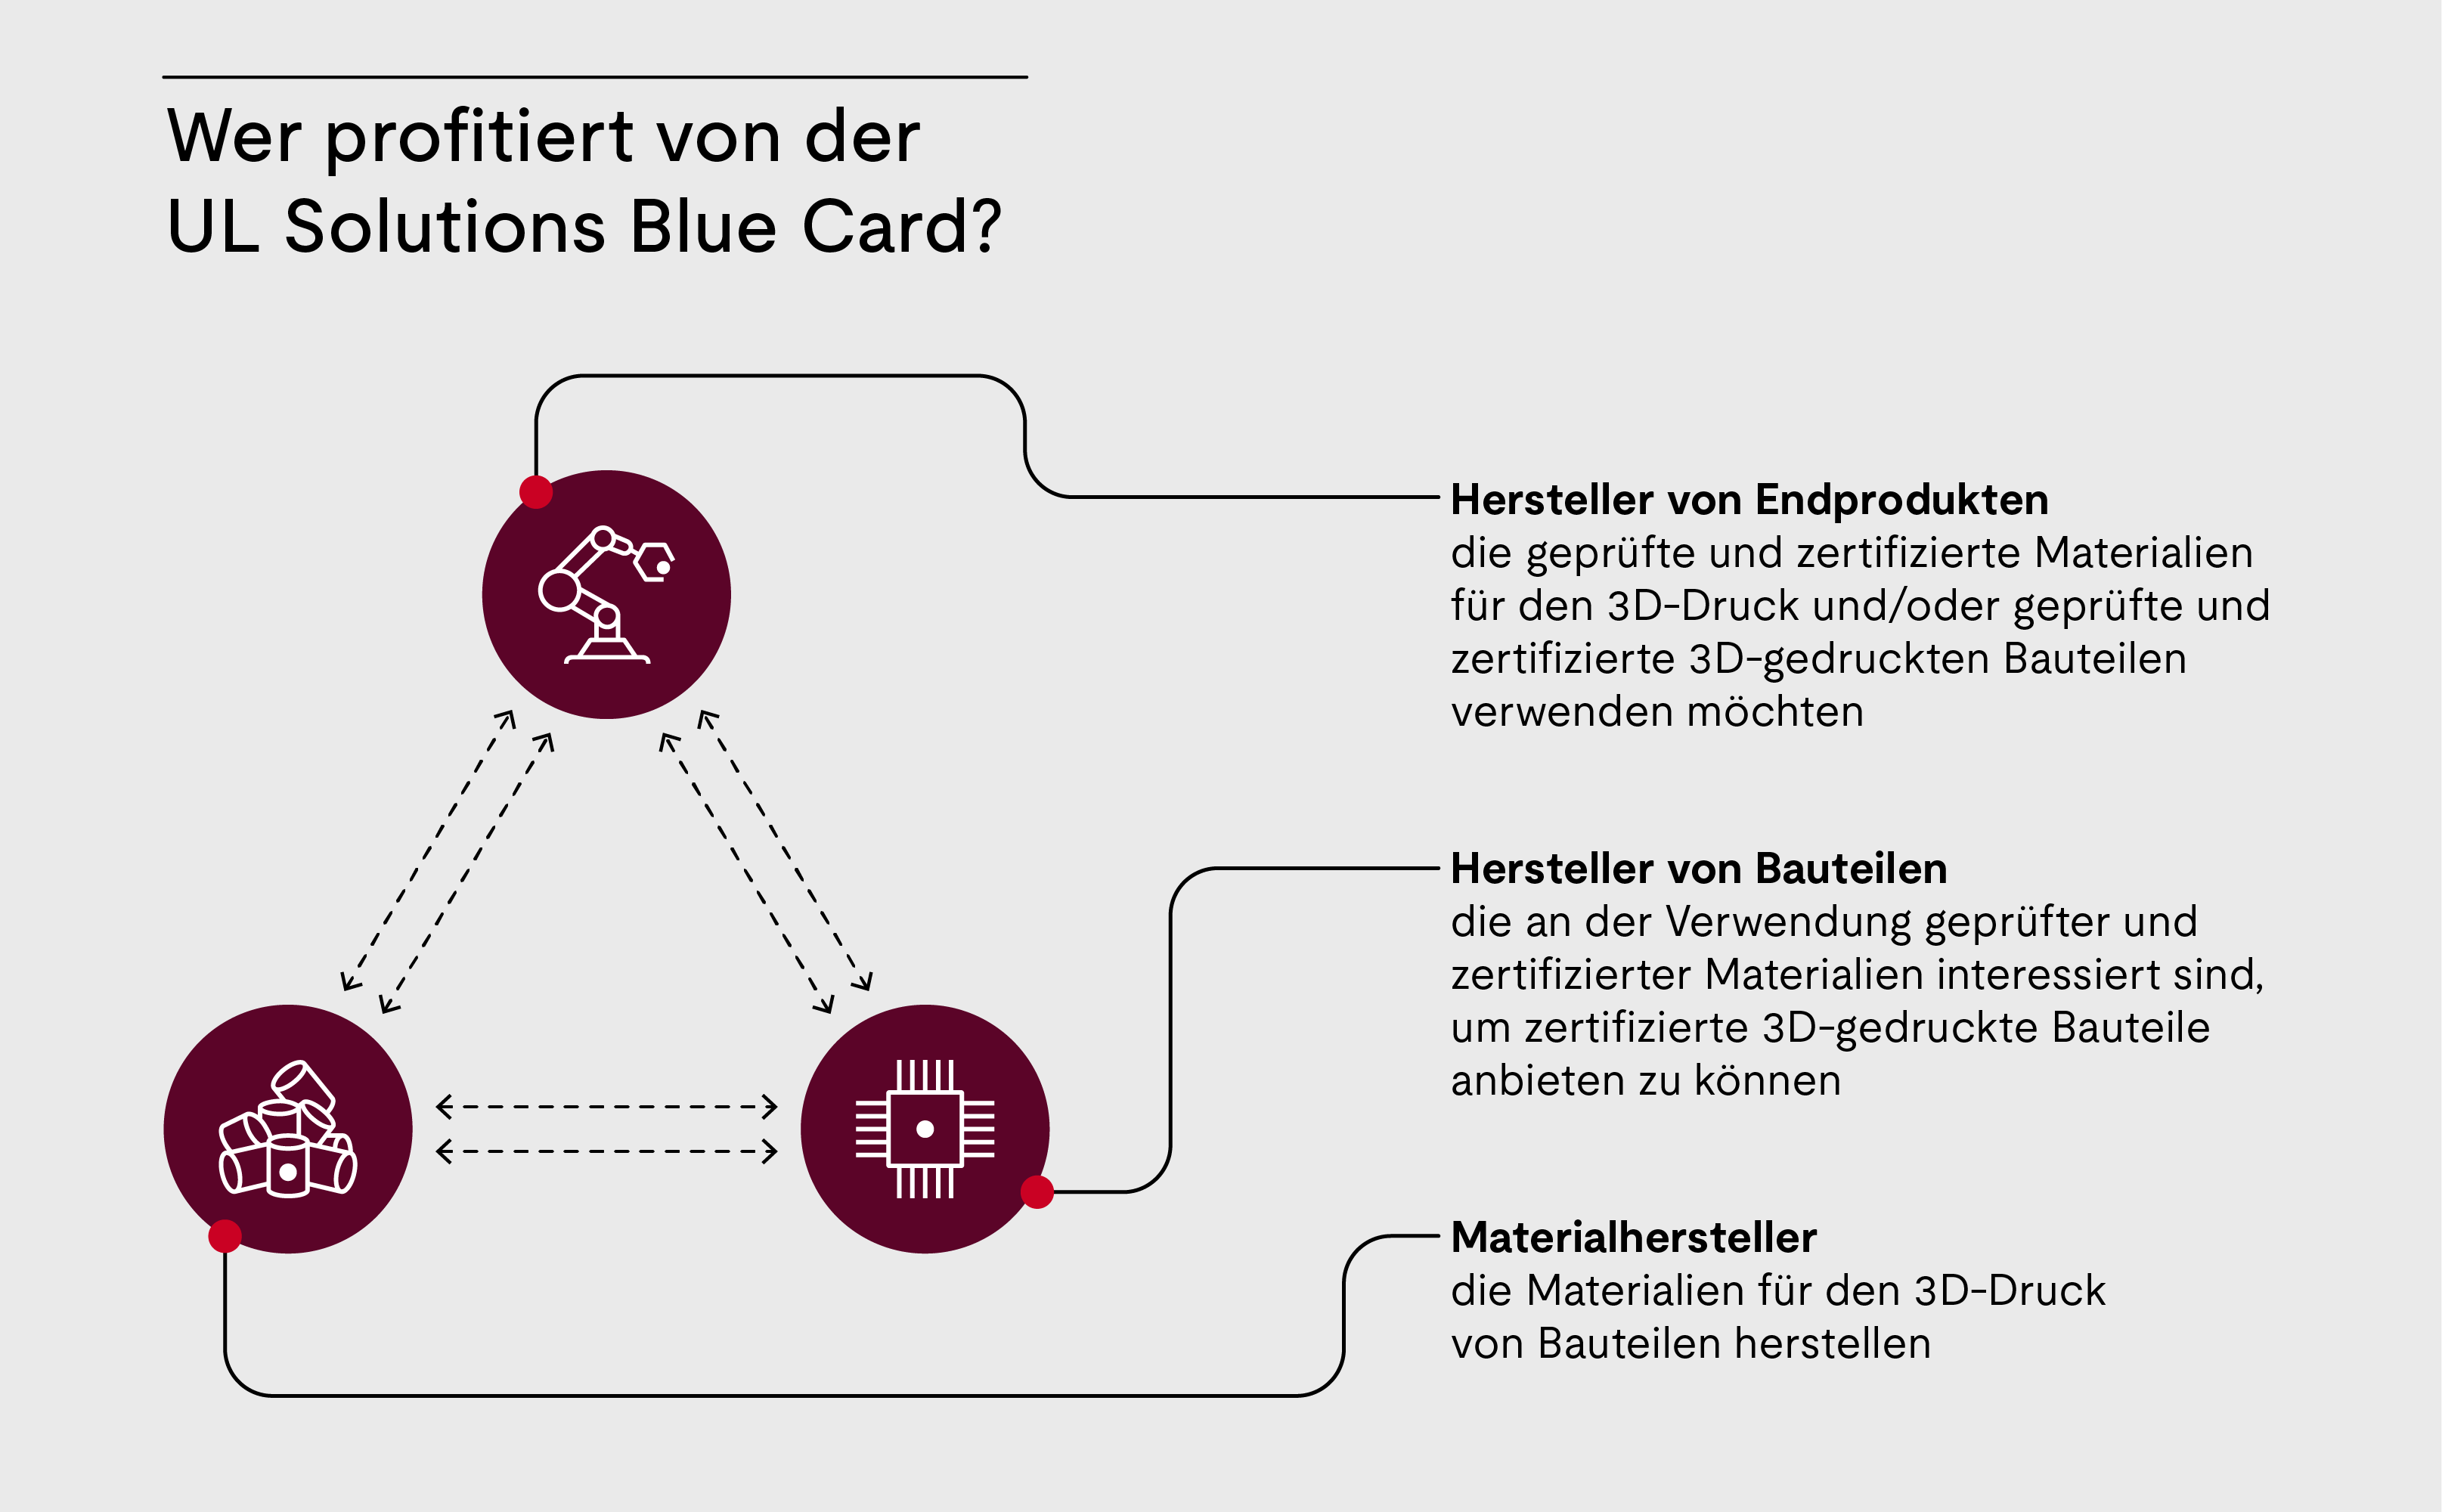 Wer profitiert von der UL Solutions Blue Card?